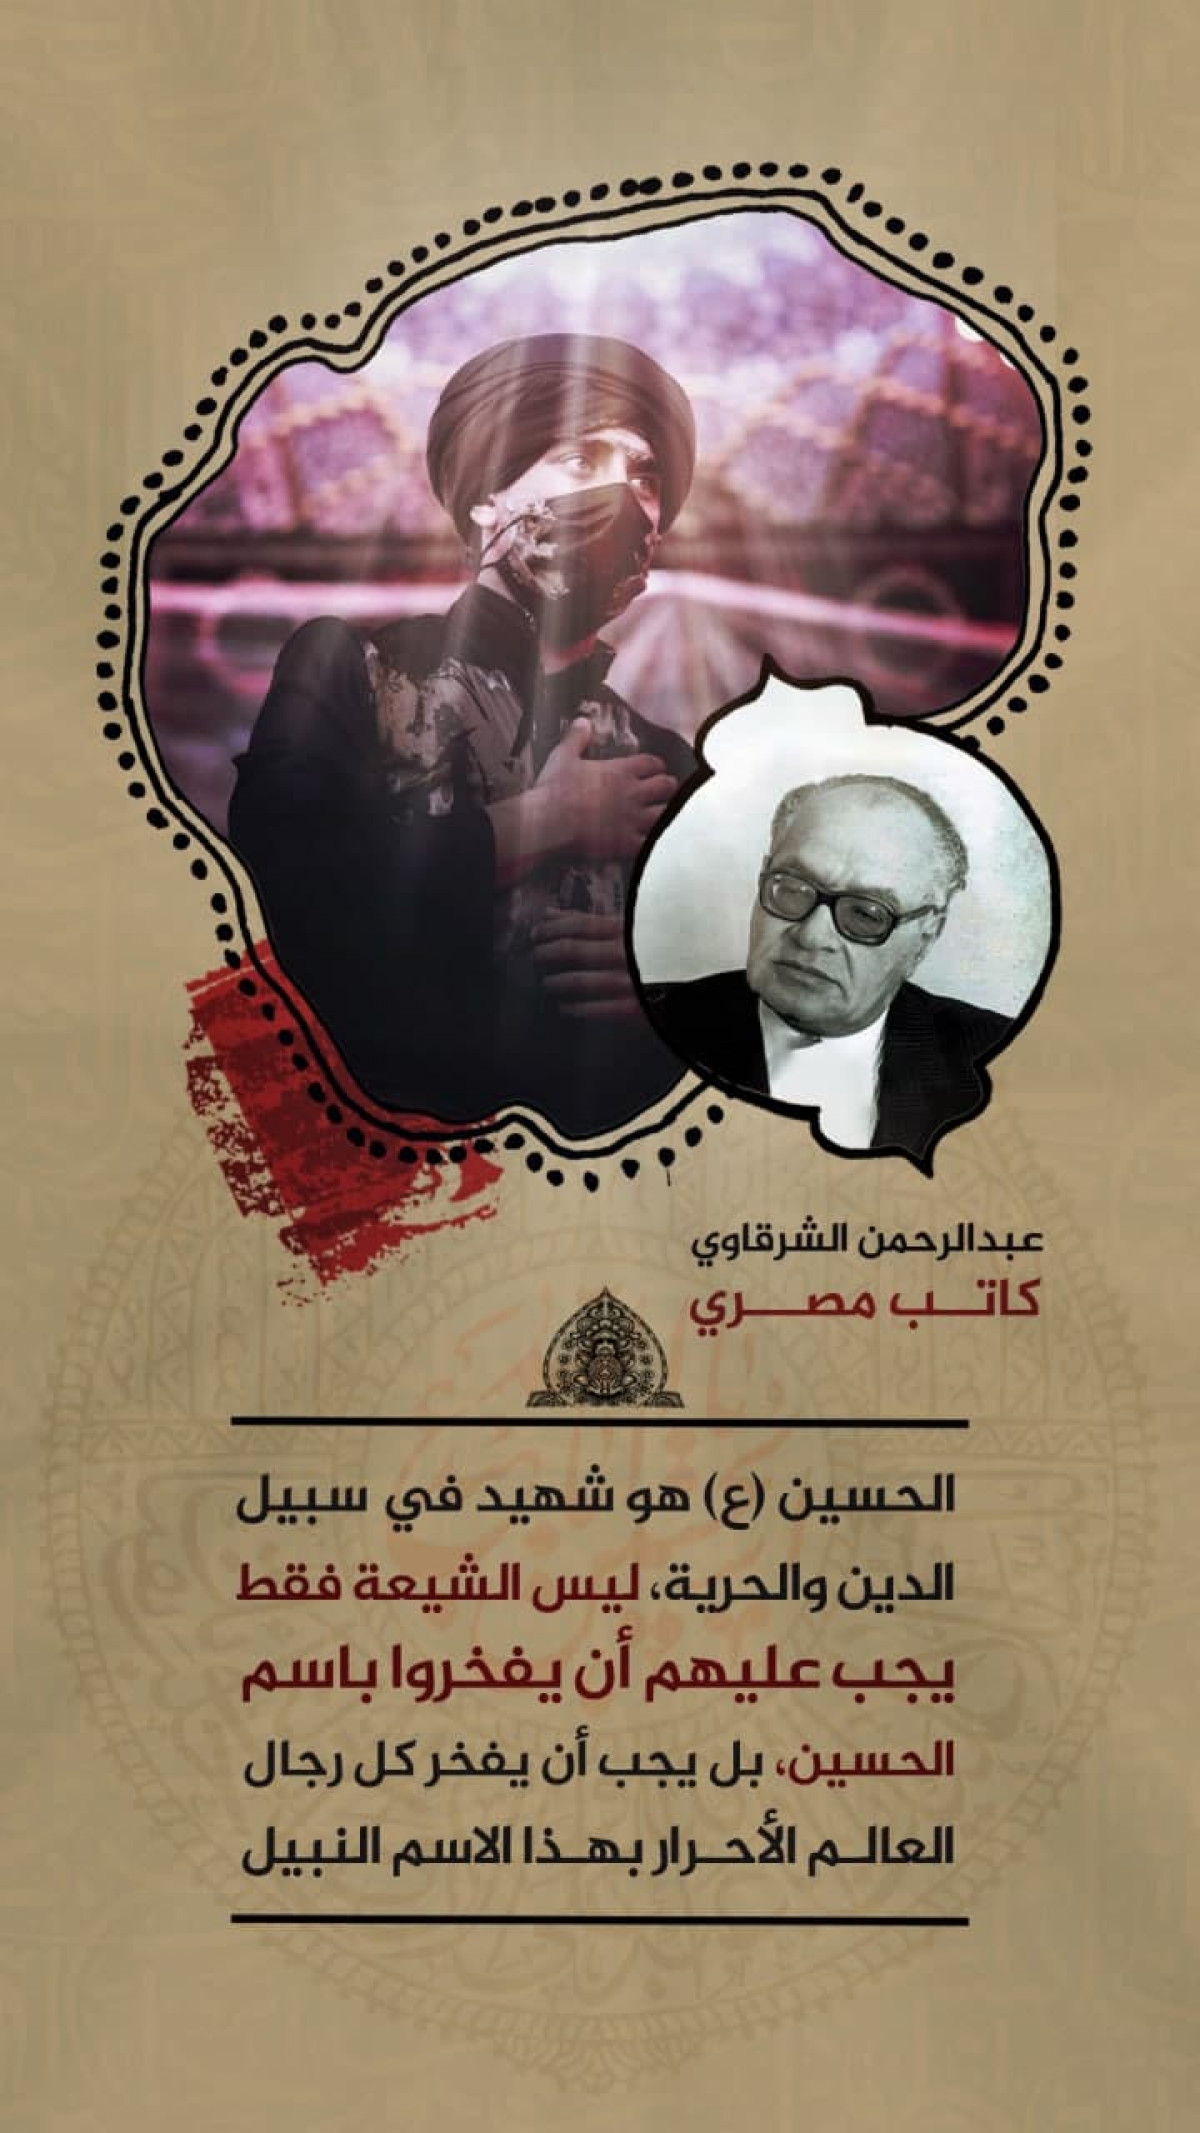 اقوال شخصيات العالمية عن الامام الحسين (ع) / عبدالرحمن الشرقاوي كاتب مصري